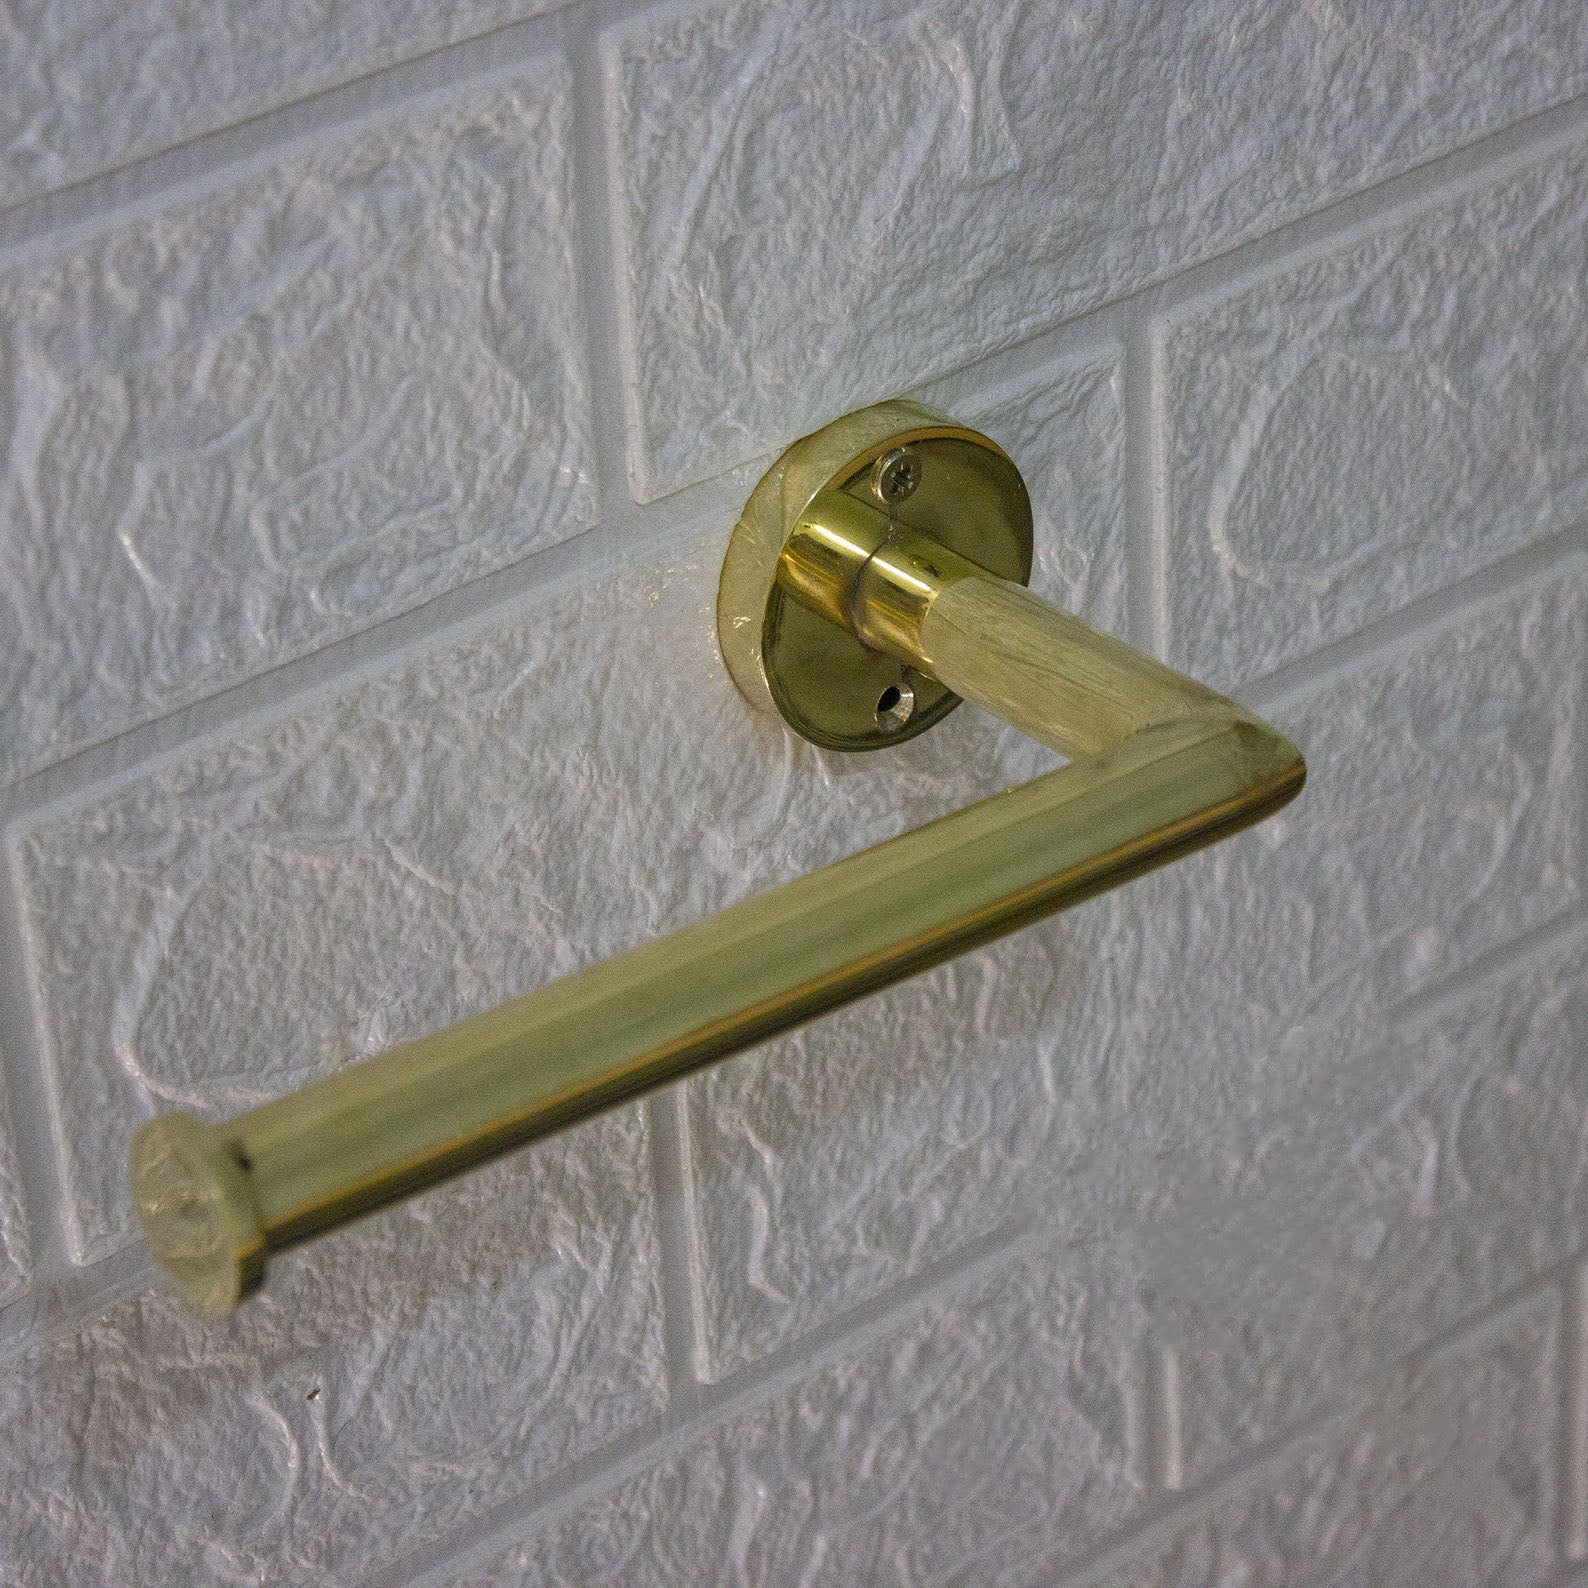 Brass Toilet Paper holder